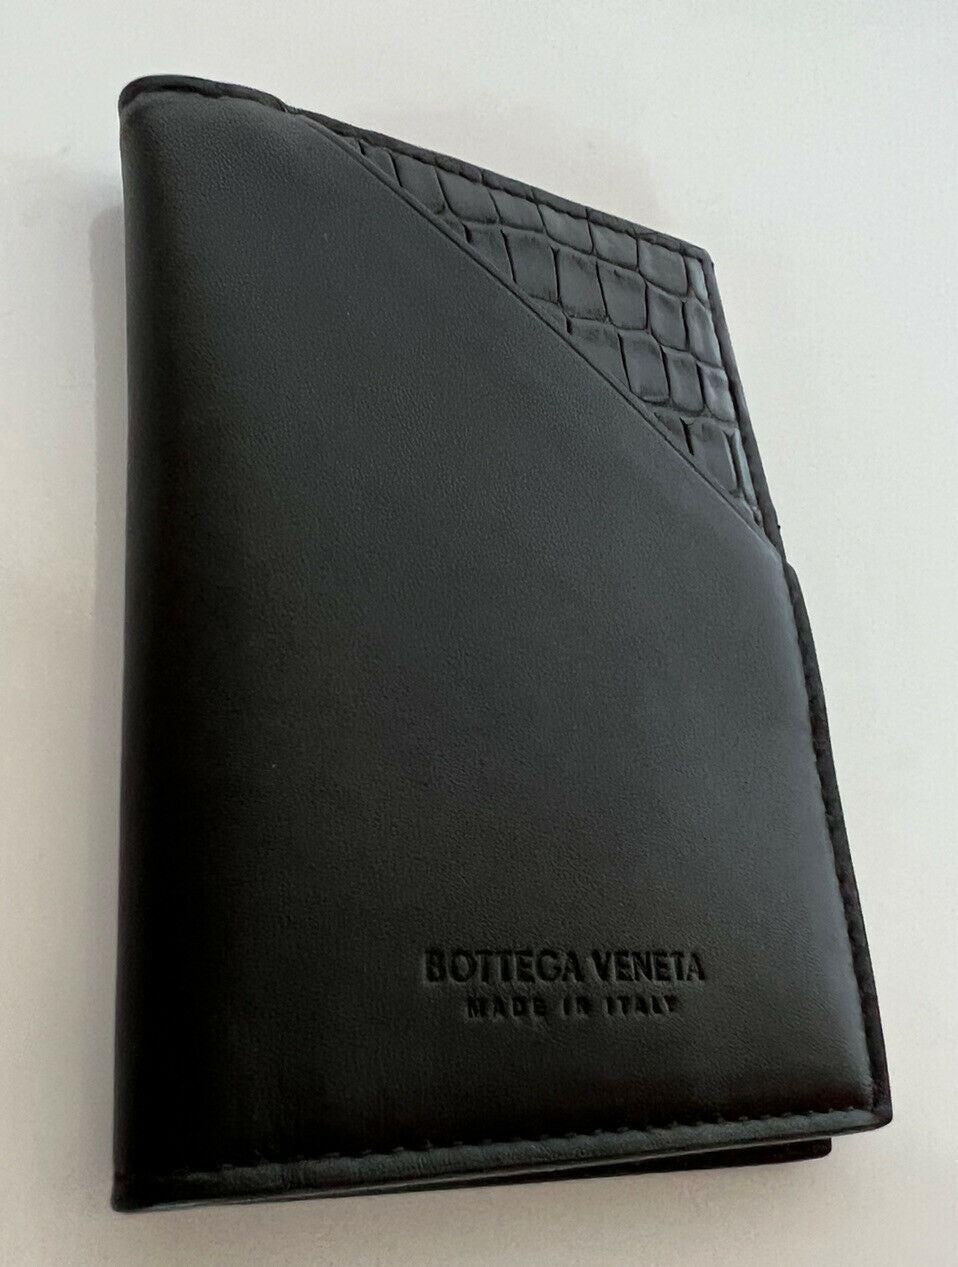 Neu mit Etikett: 680 $ Bottega Veneta Herren-Geldbörse aus Alligatorleder Schwarz 619380 Italien 